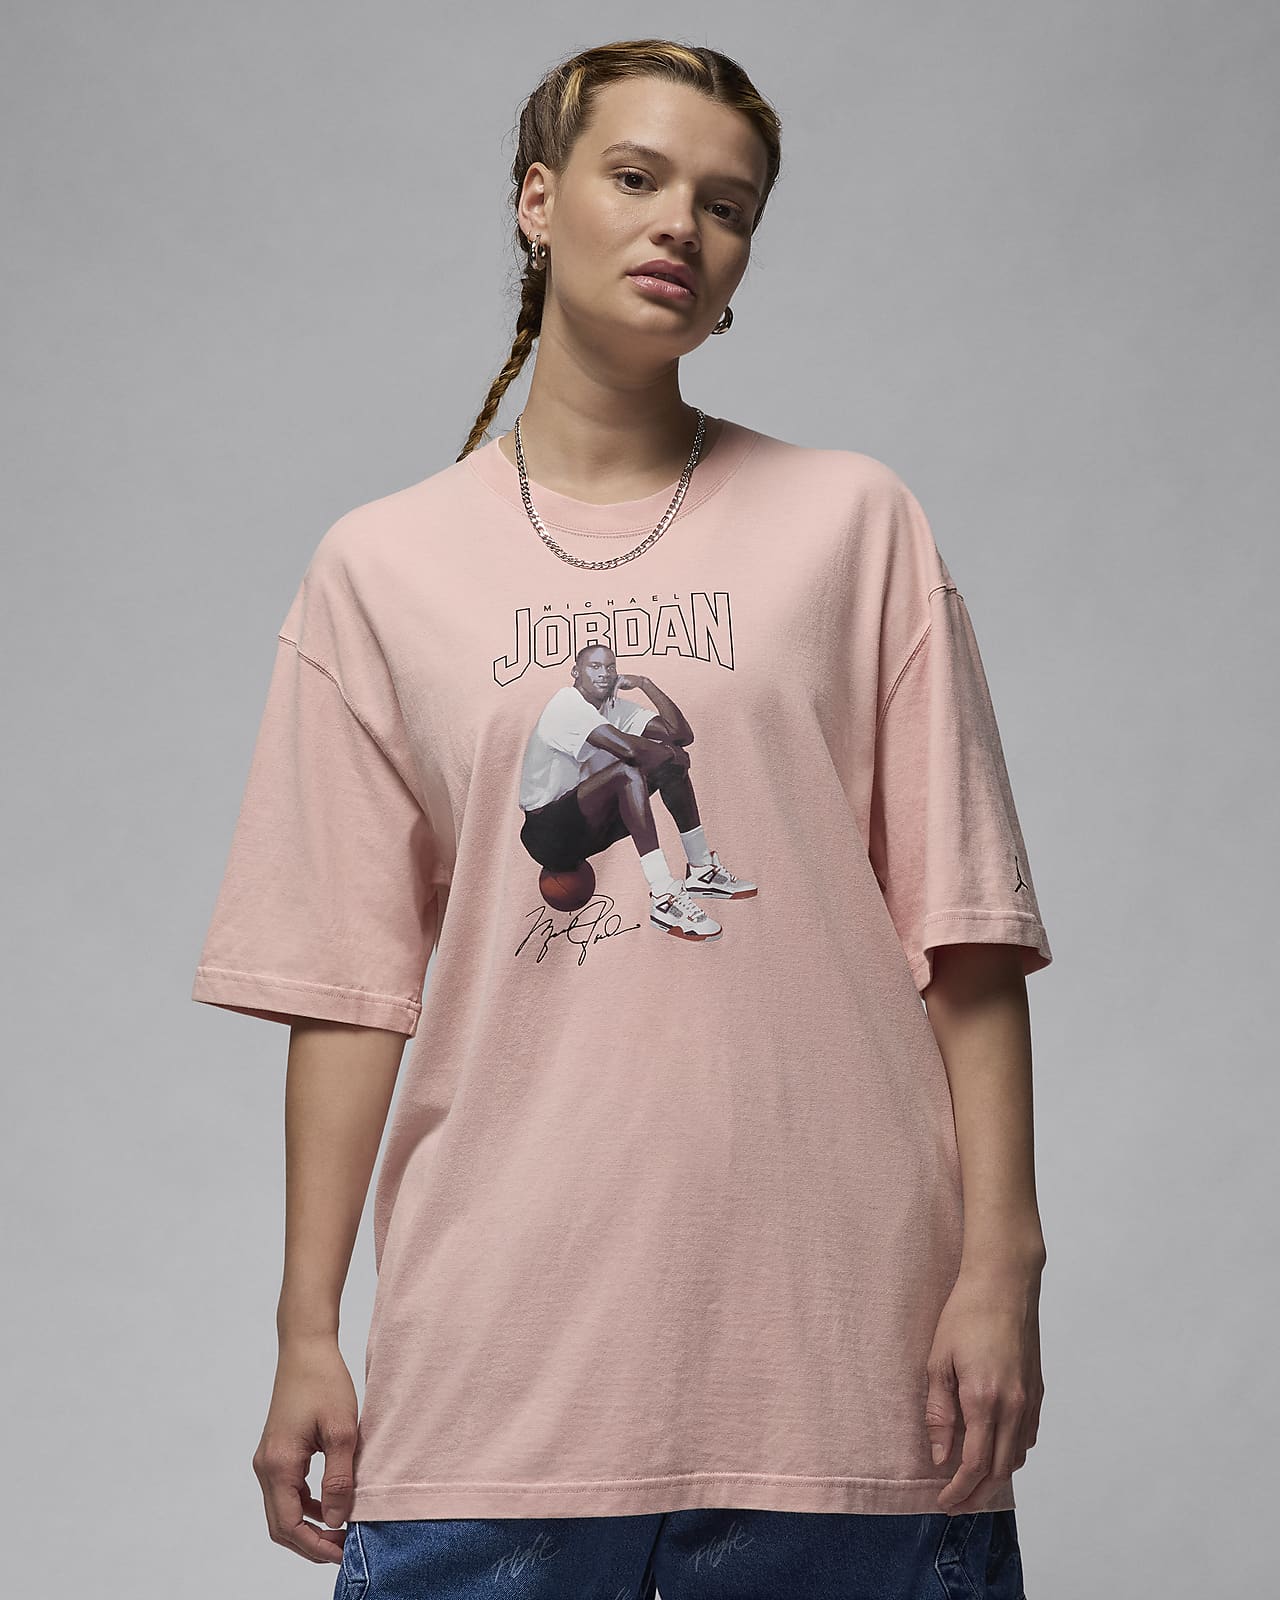 Jordan ekstra stor T-skjorte med grafikk til dame